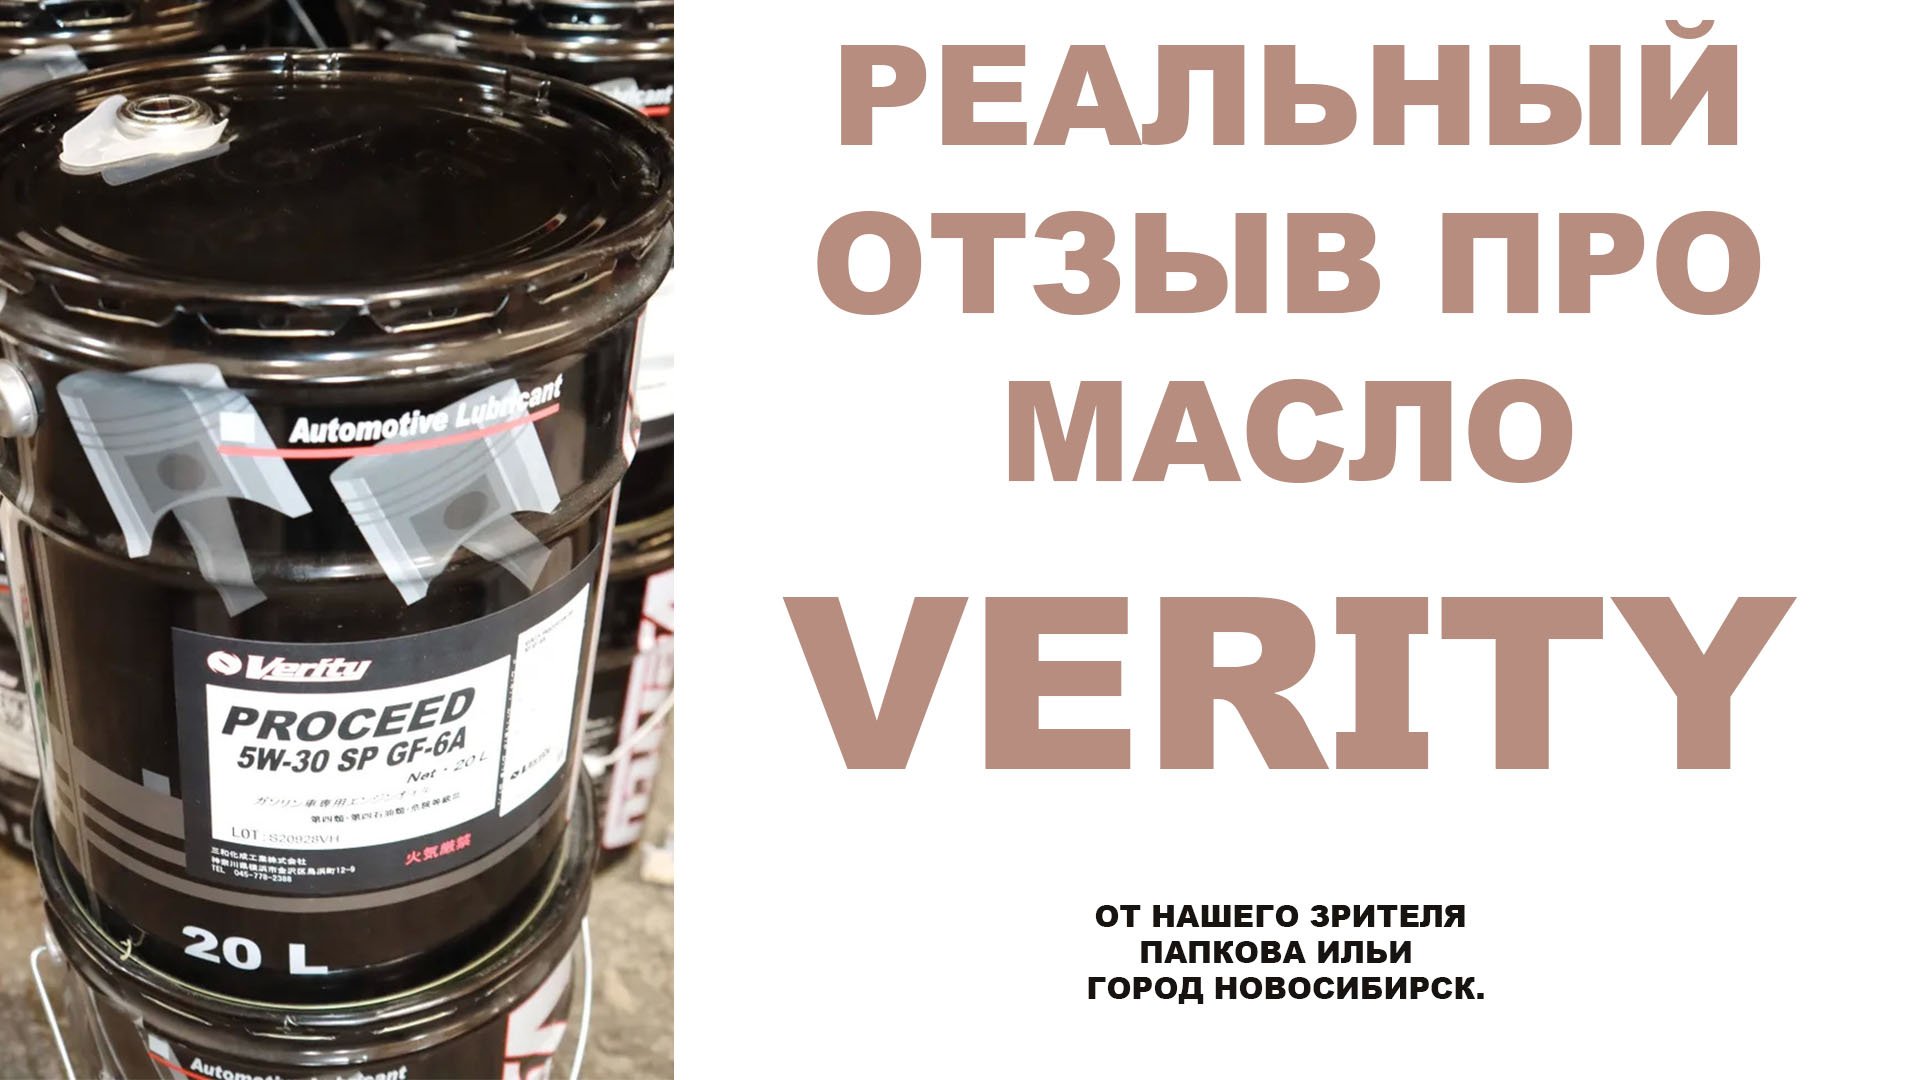 Реальный отзыв про моторное масло VERITY от нашего зрителя  Папкова Ильи город Новосибирск.